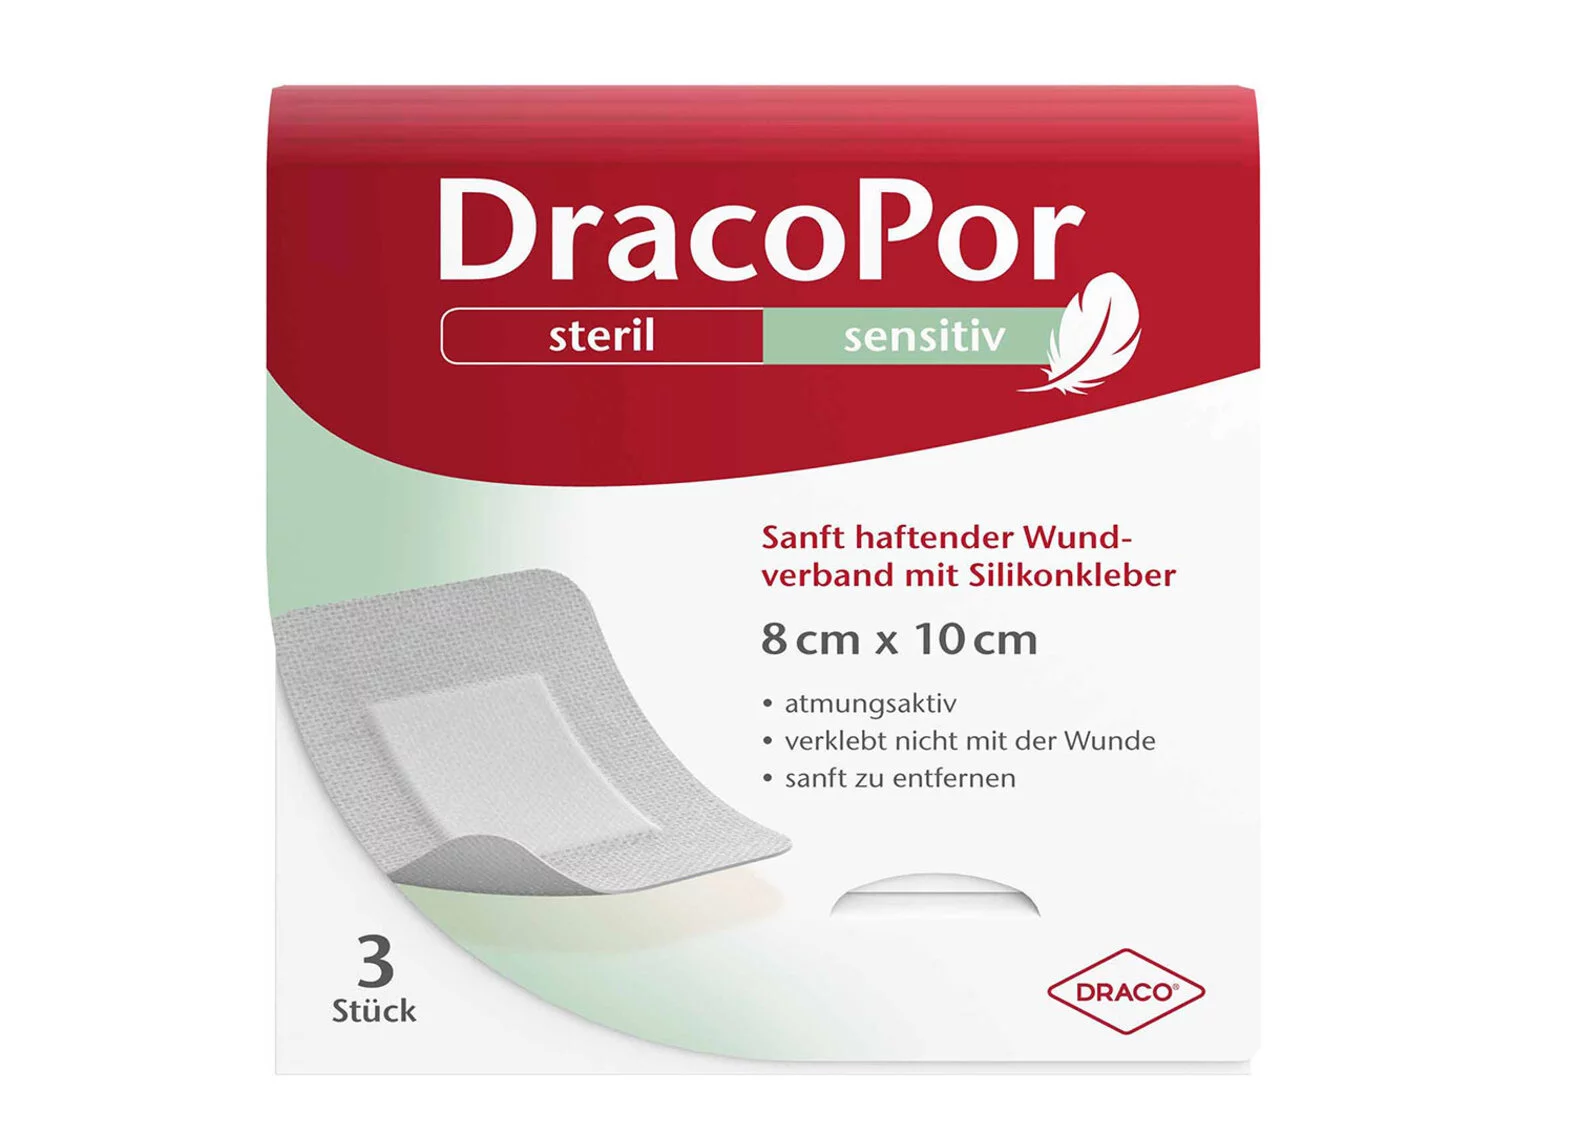 DracoPor sensitiv Mittlere Größe Packshot